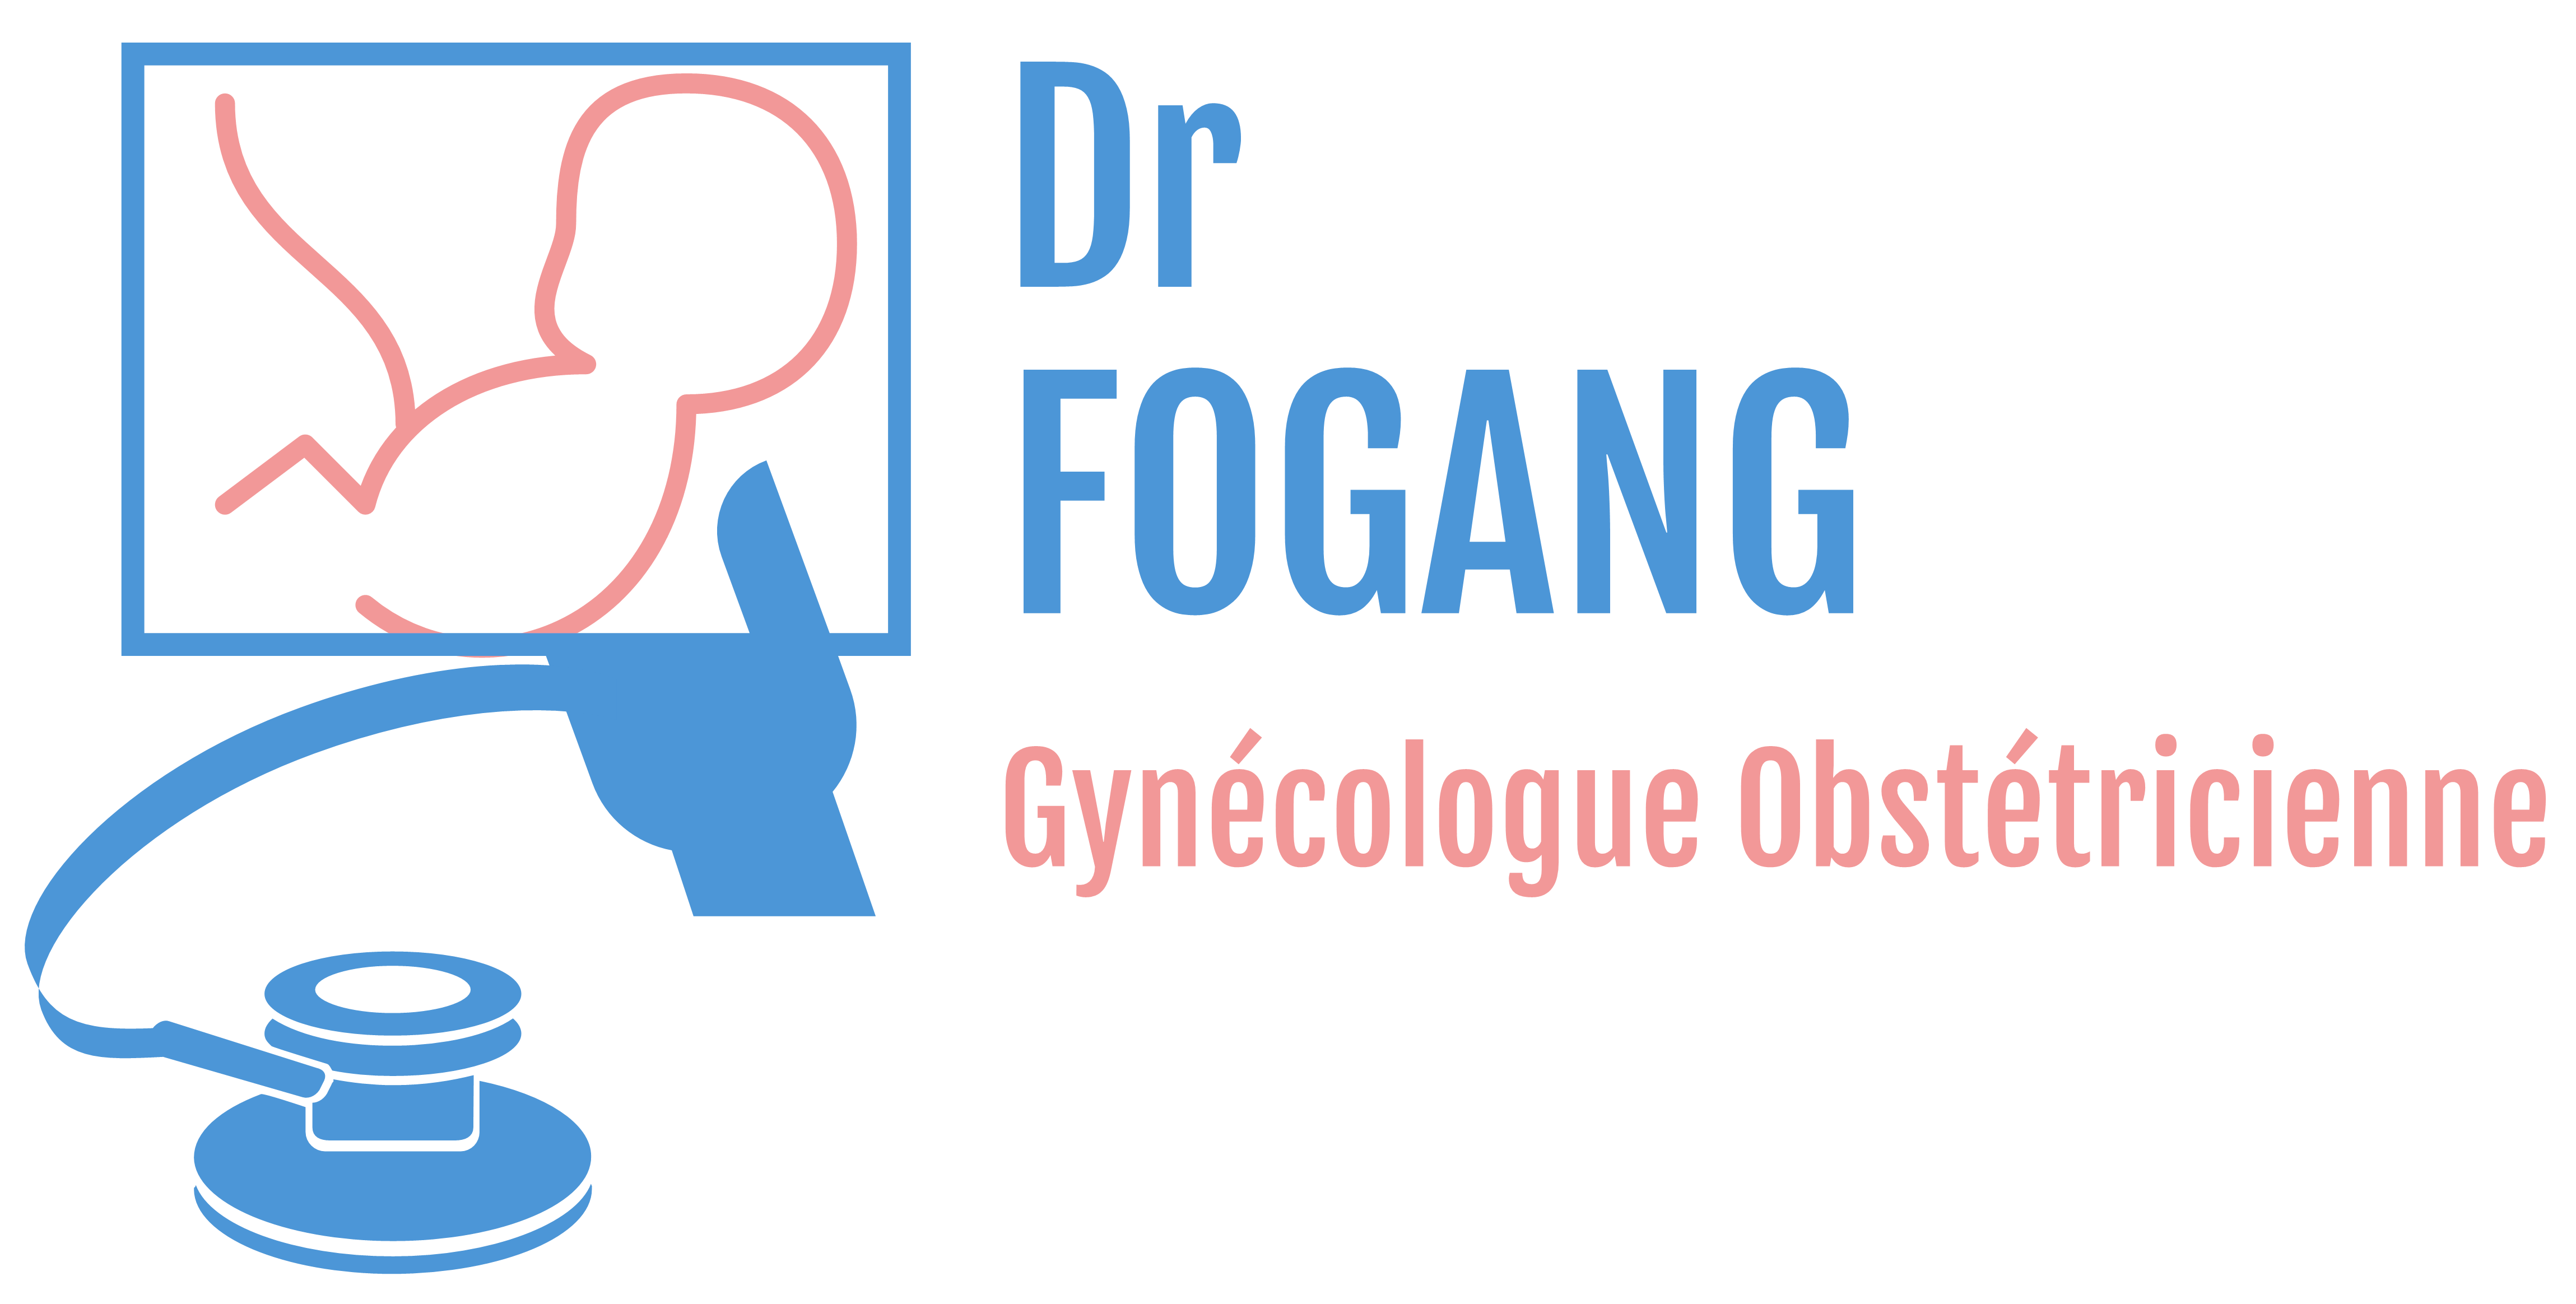 Cabinet Dr Fogang